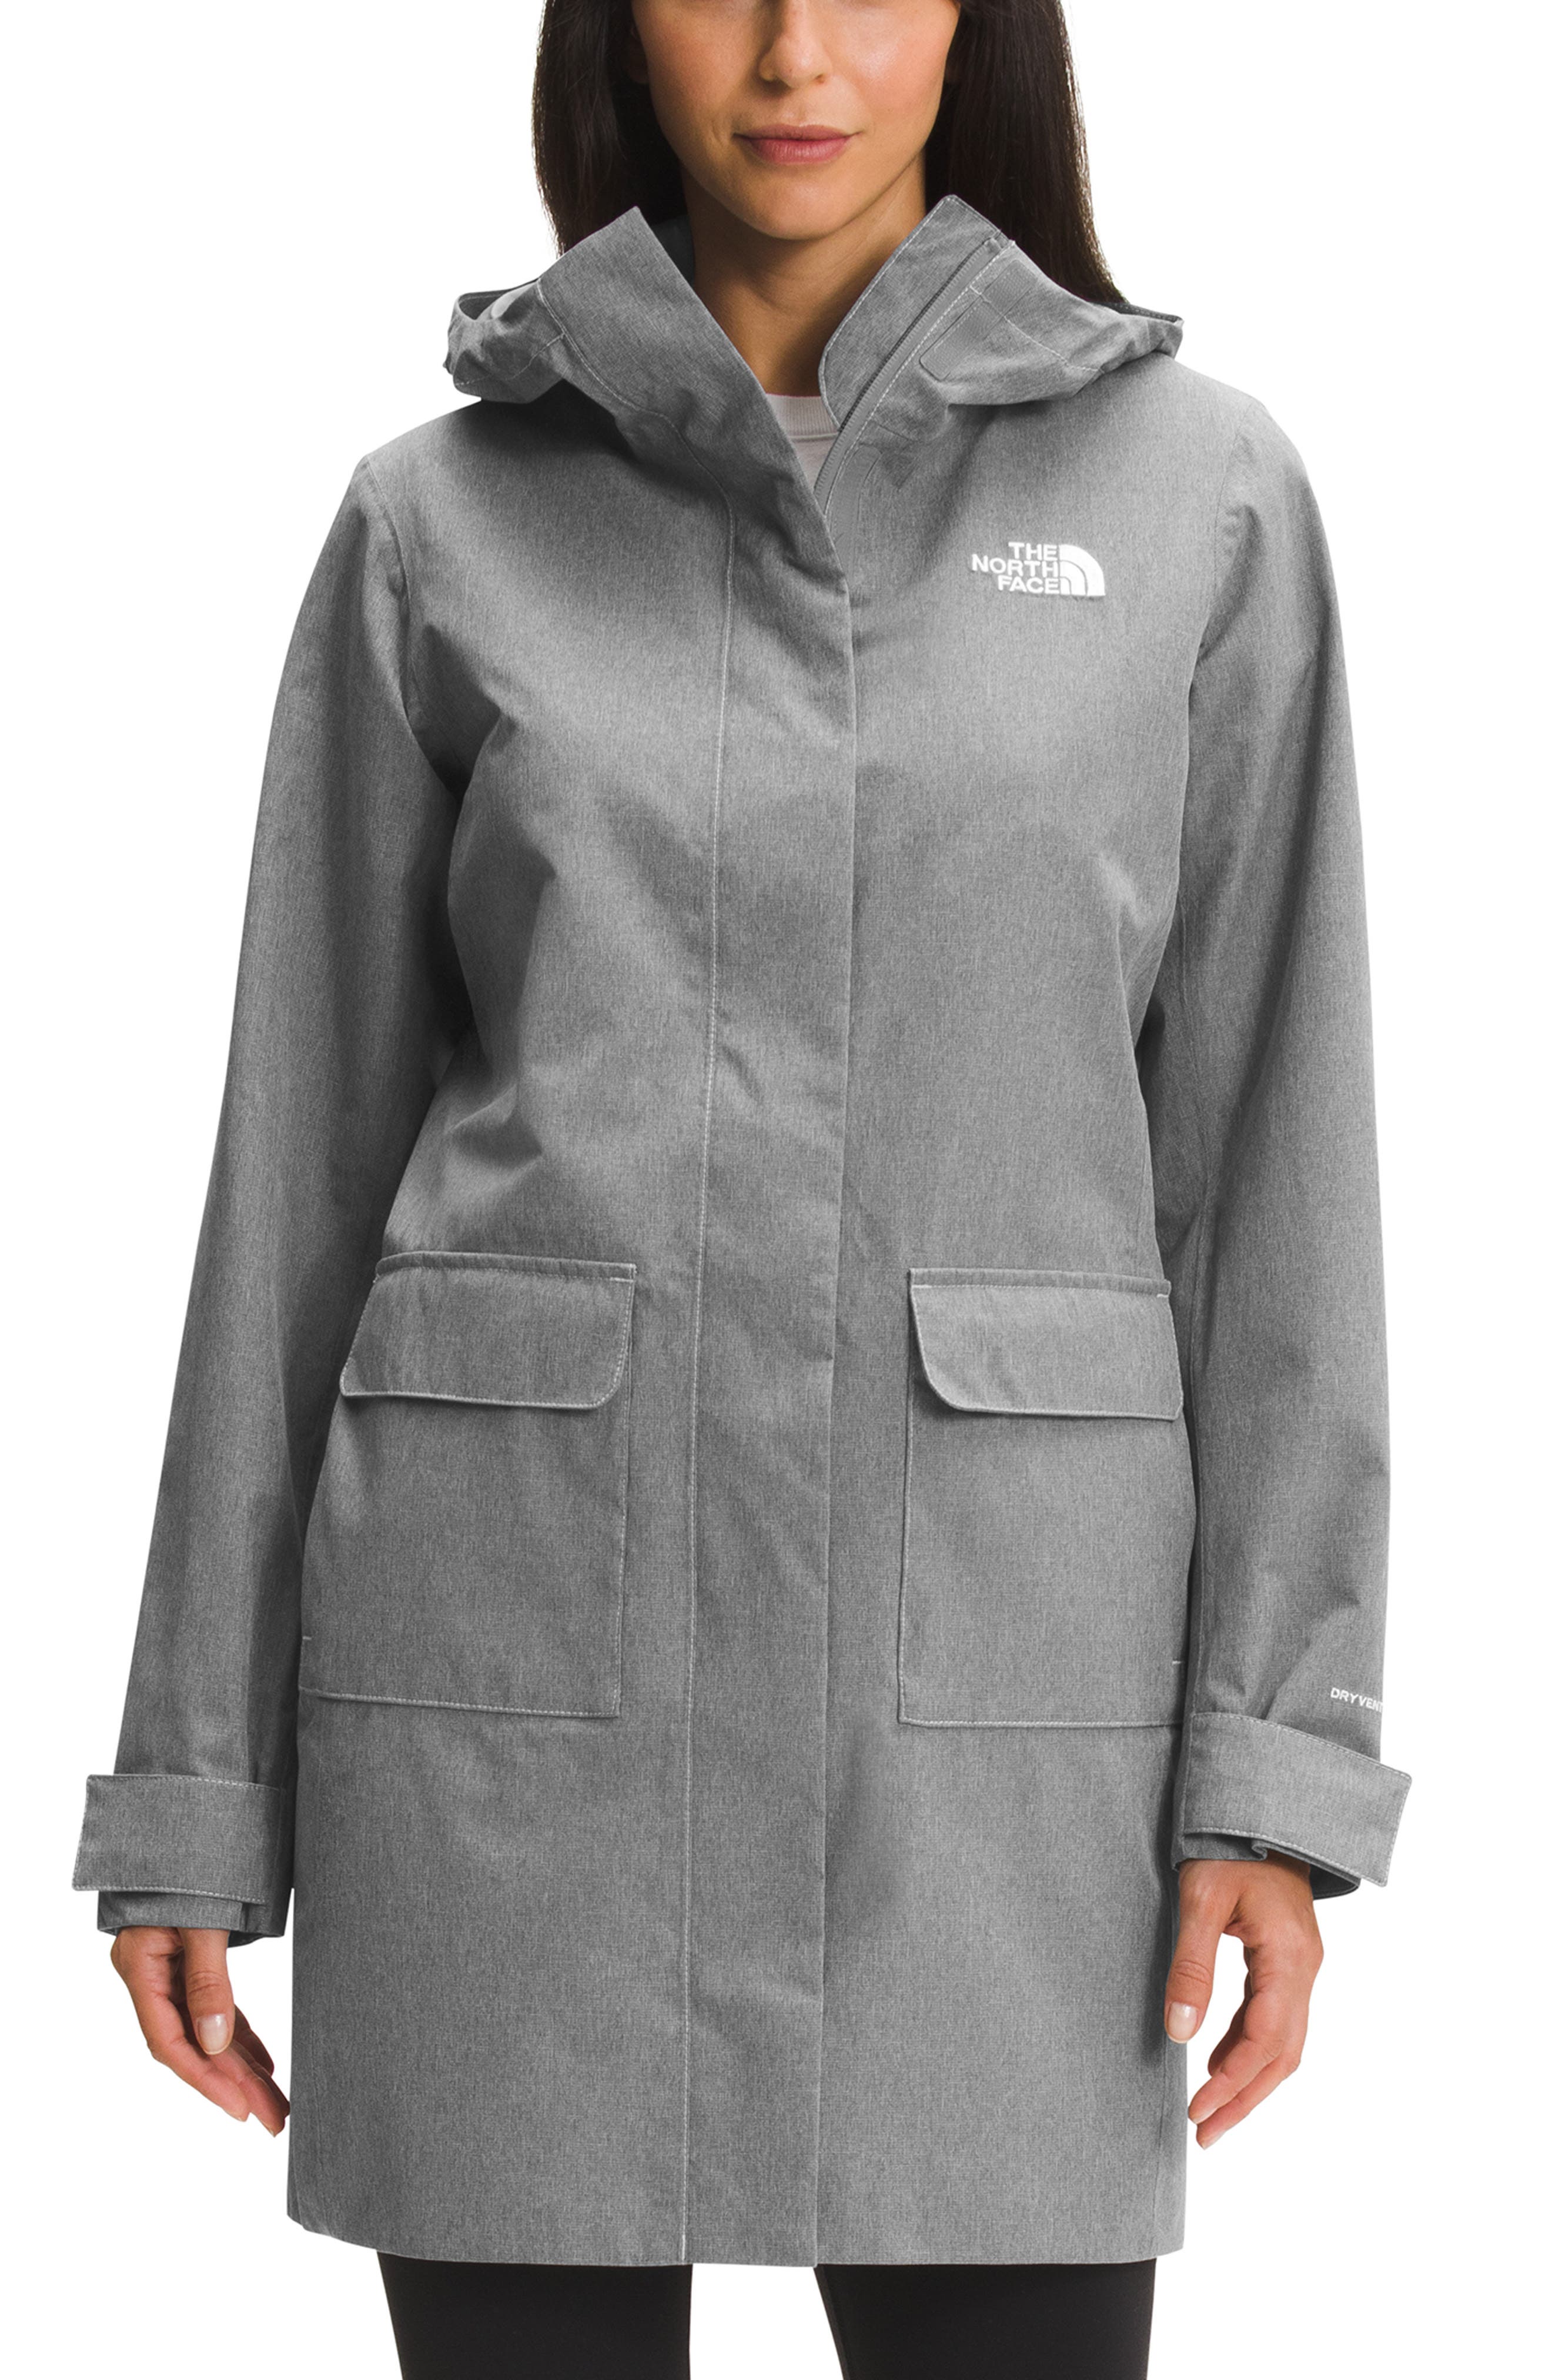 Women's Winter Coat Ladies Hoodie Casual Jacket Coat Size 8,10,12,14,16 UK